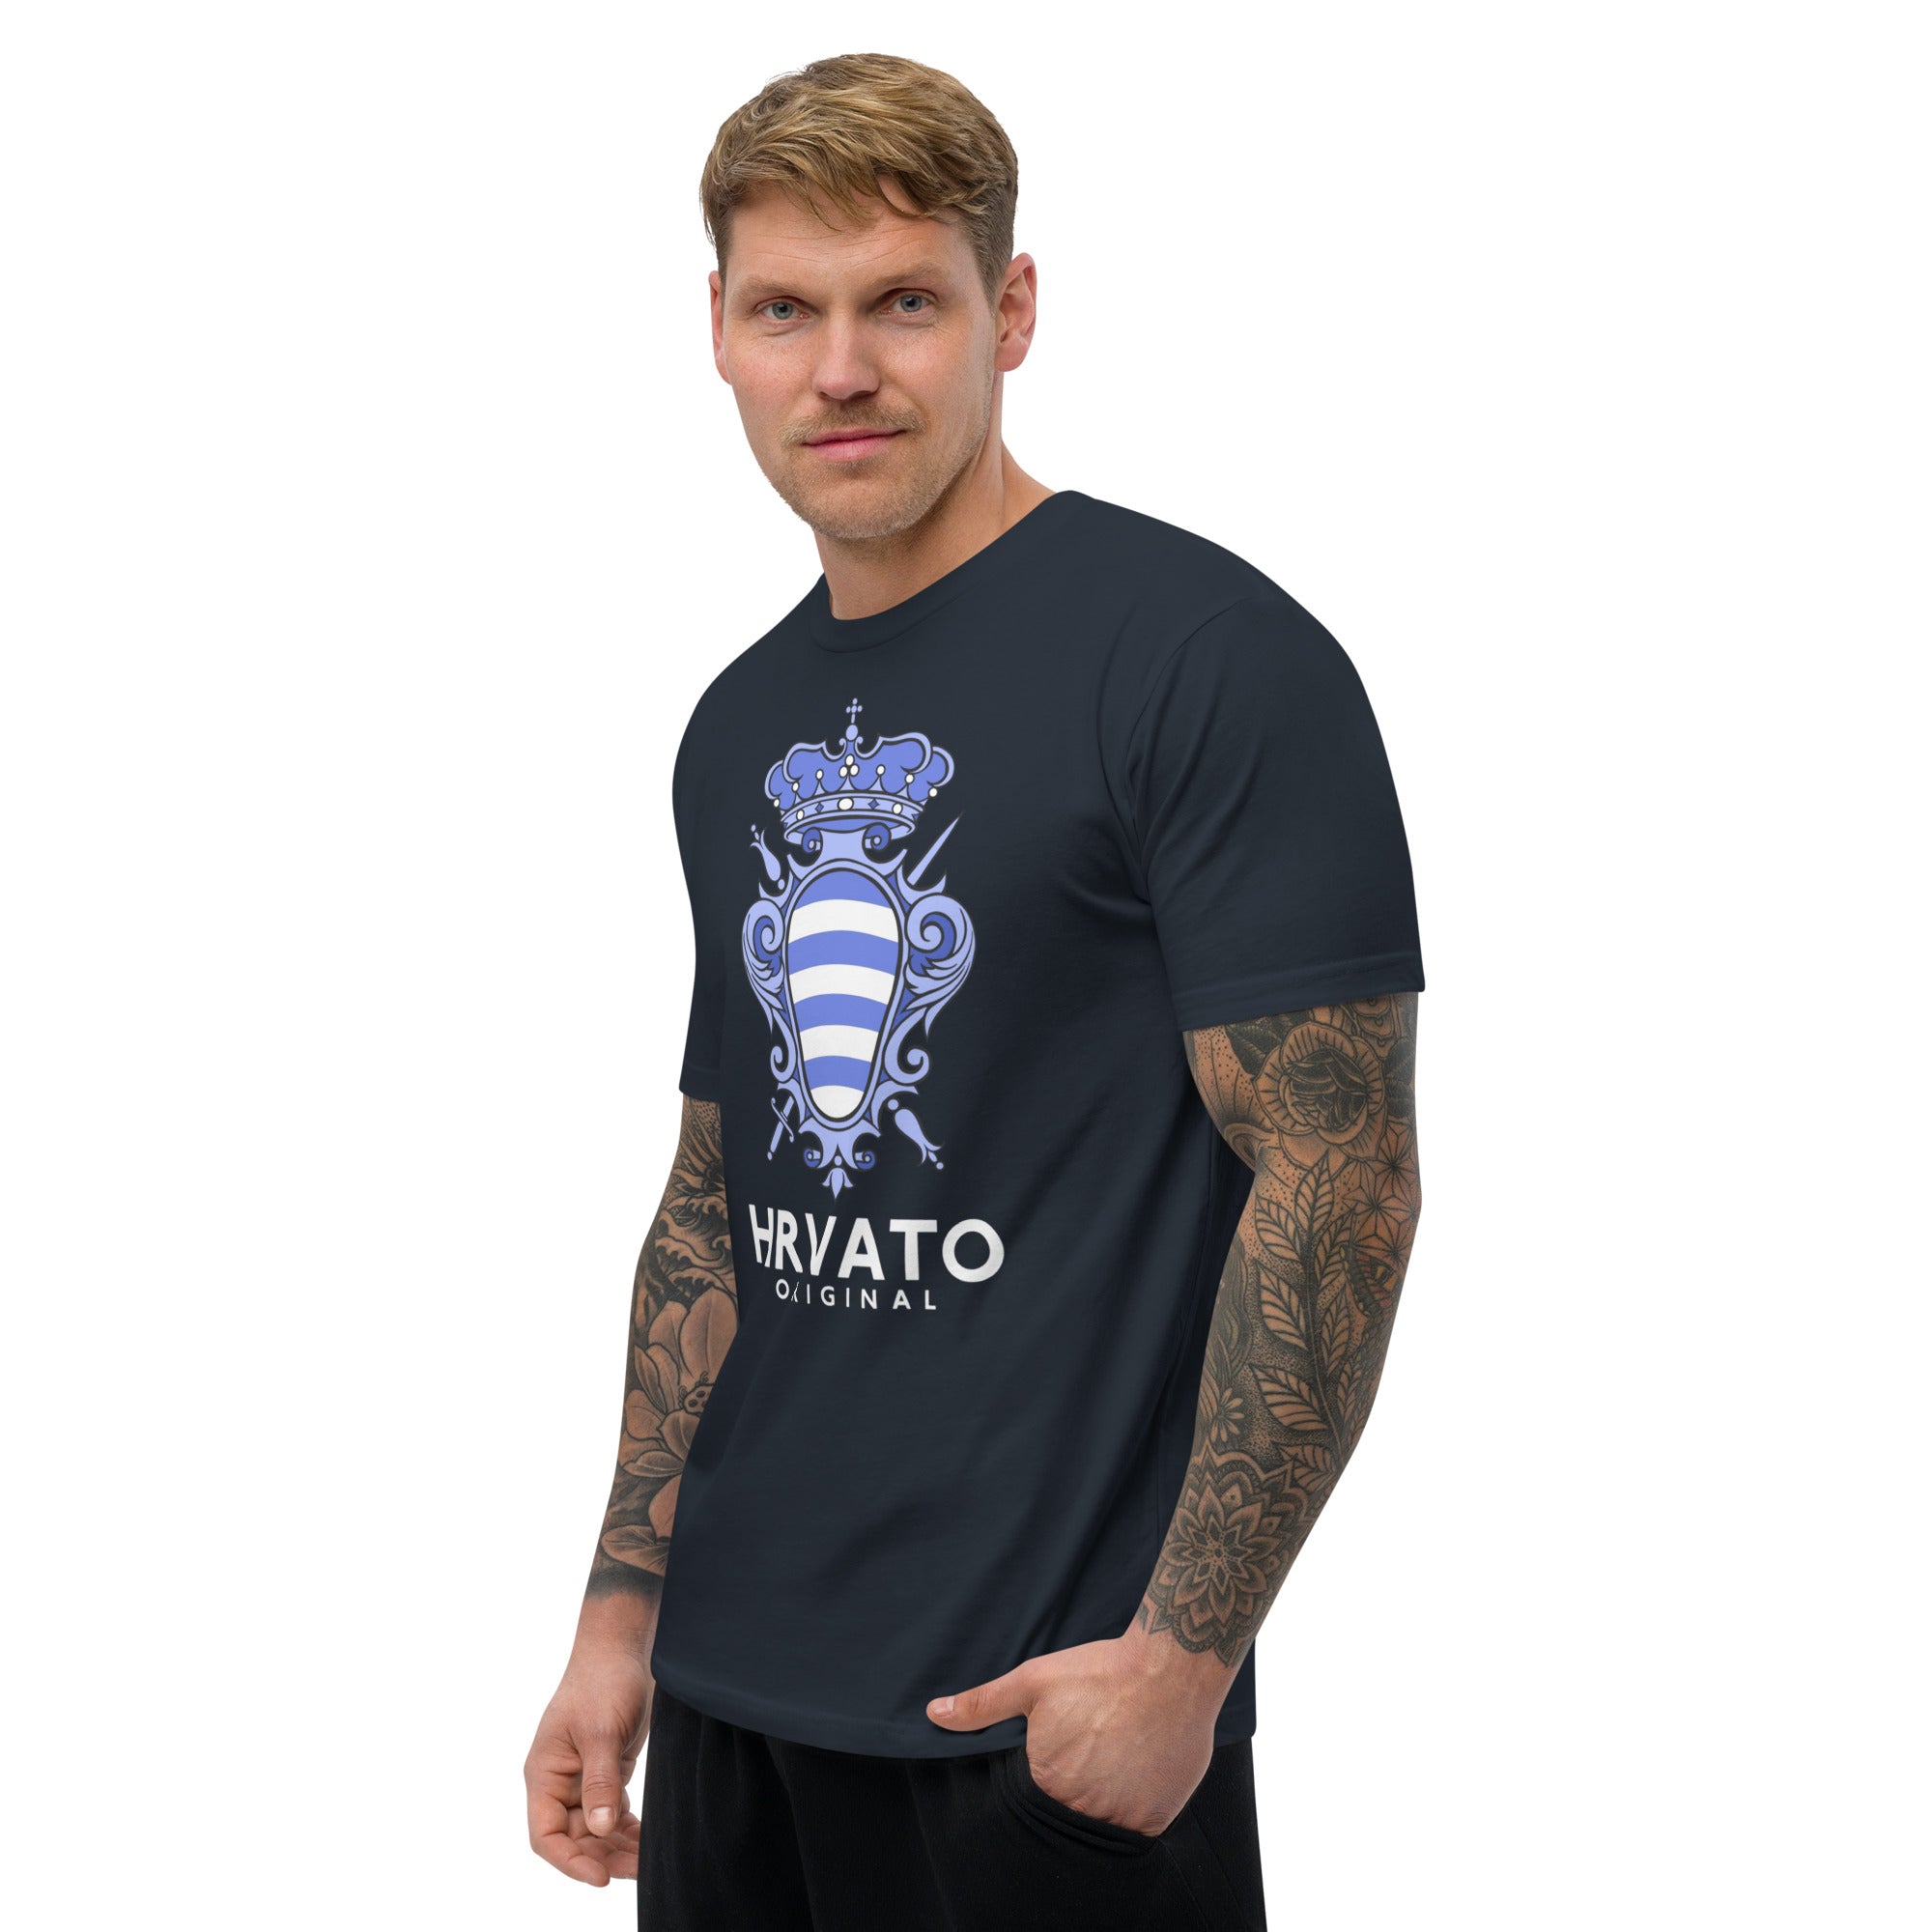 Dubrovnik Blue Crest Men's T-shirt - Authentic Croatian Design